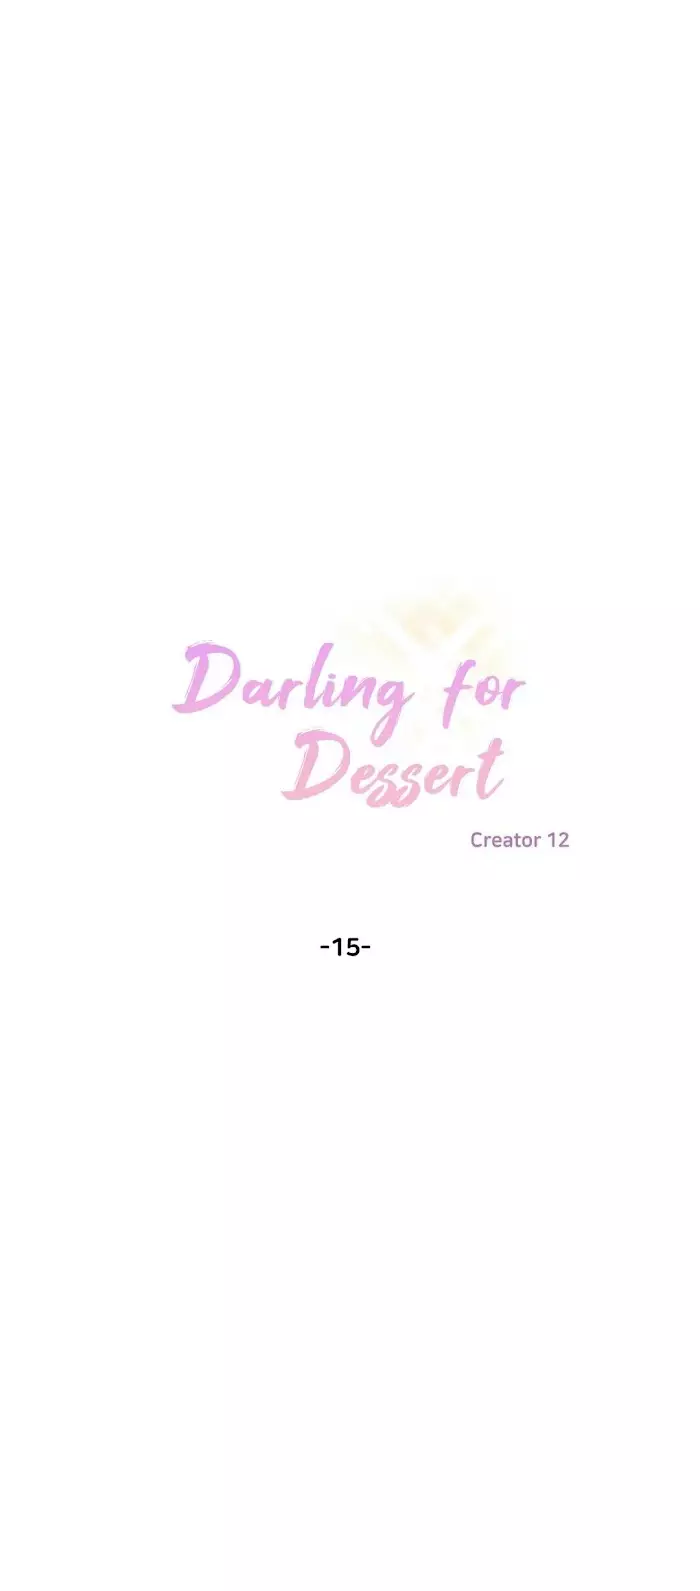 Director's Dessert - 15 page 5-8a3d88fd